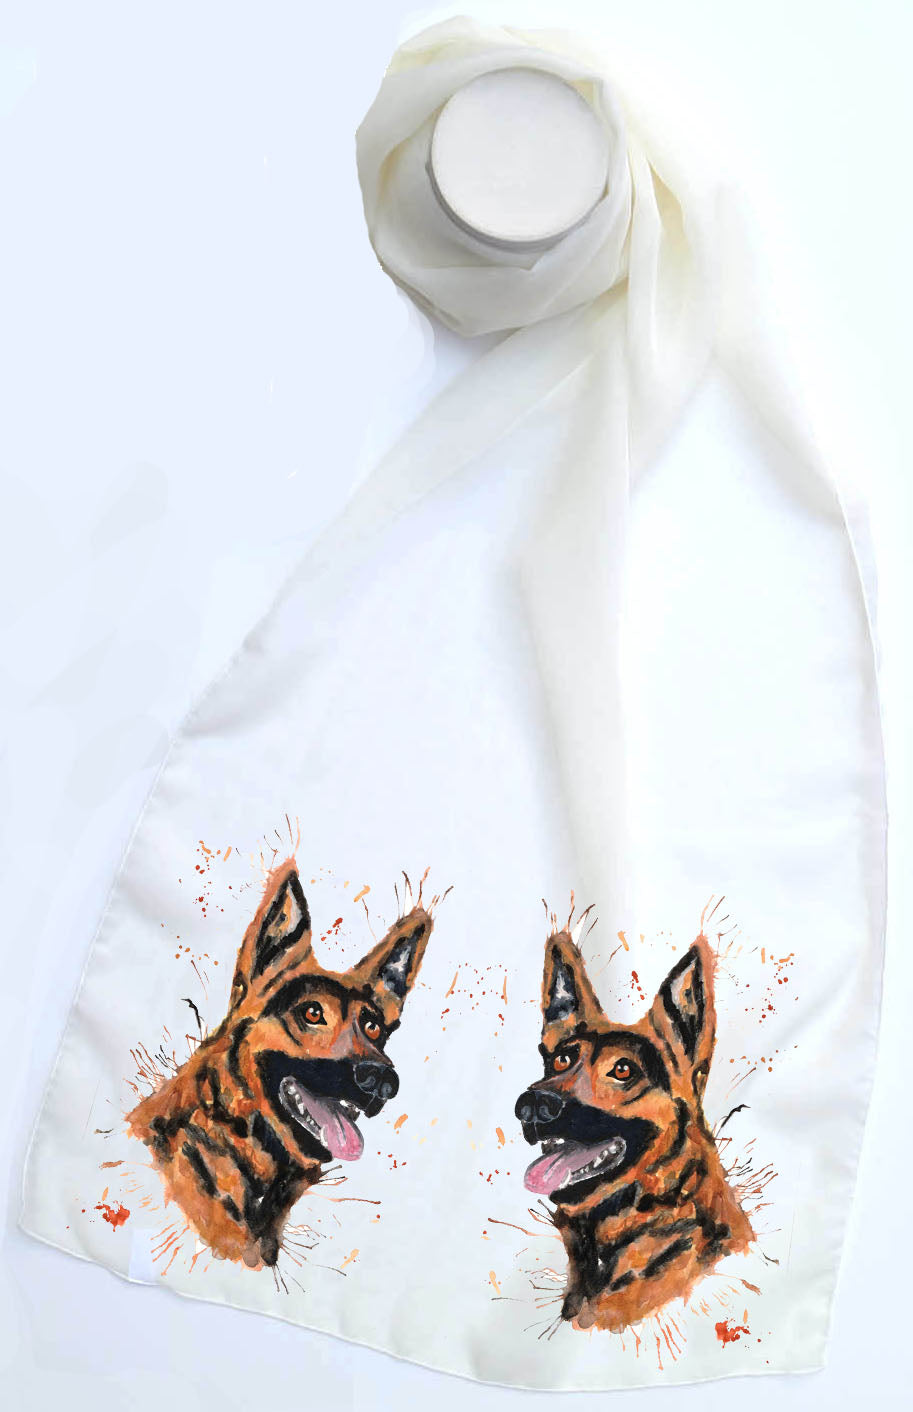 German Shepherd dog (GSD) scarf